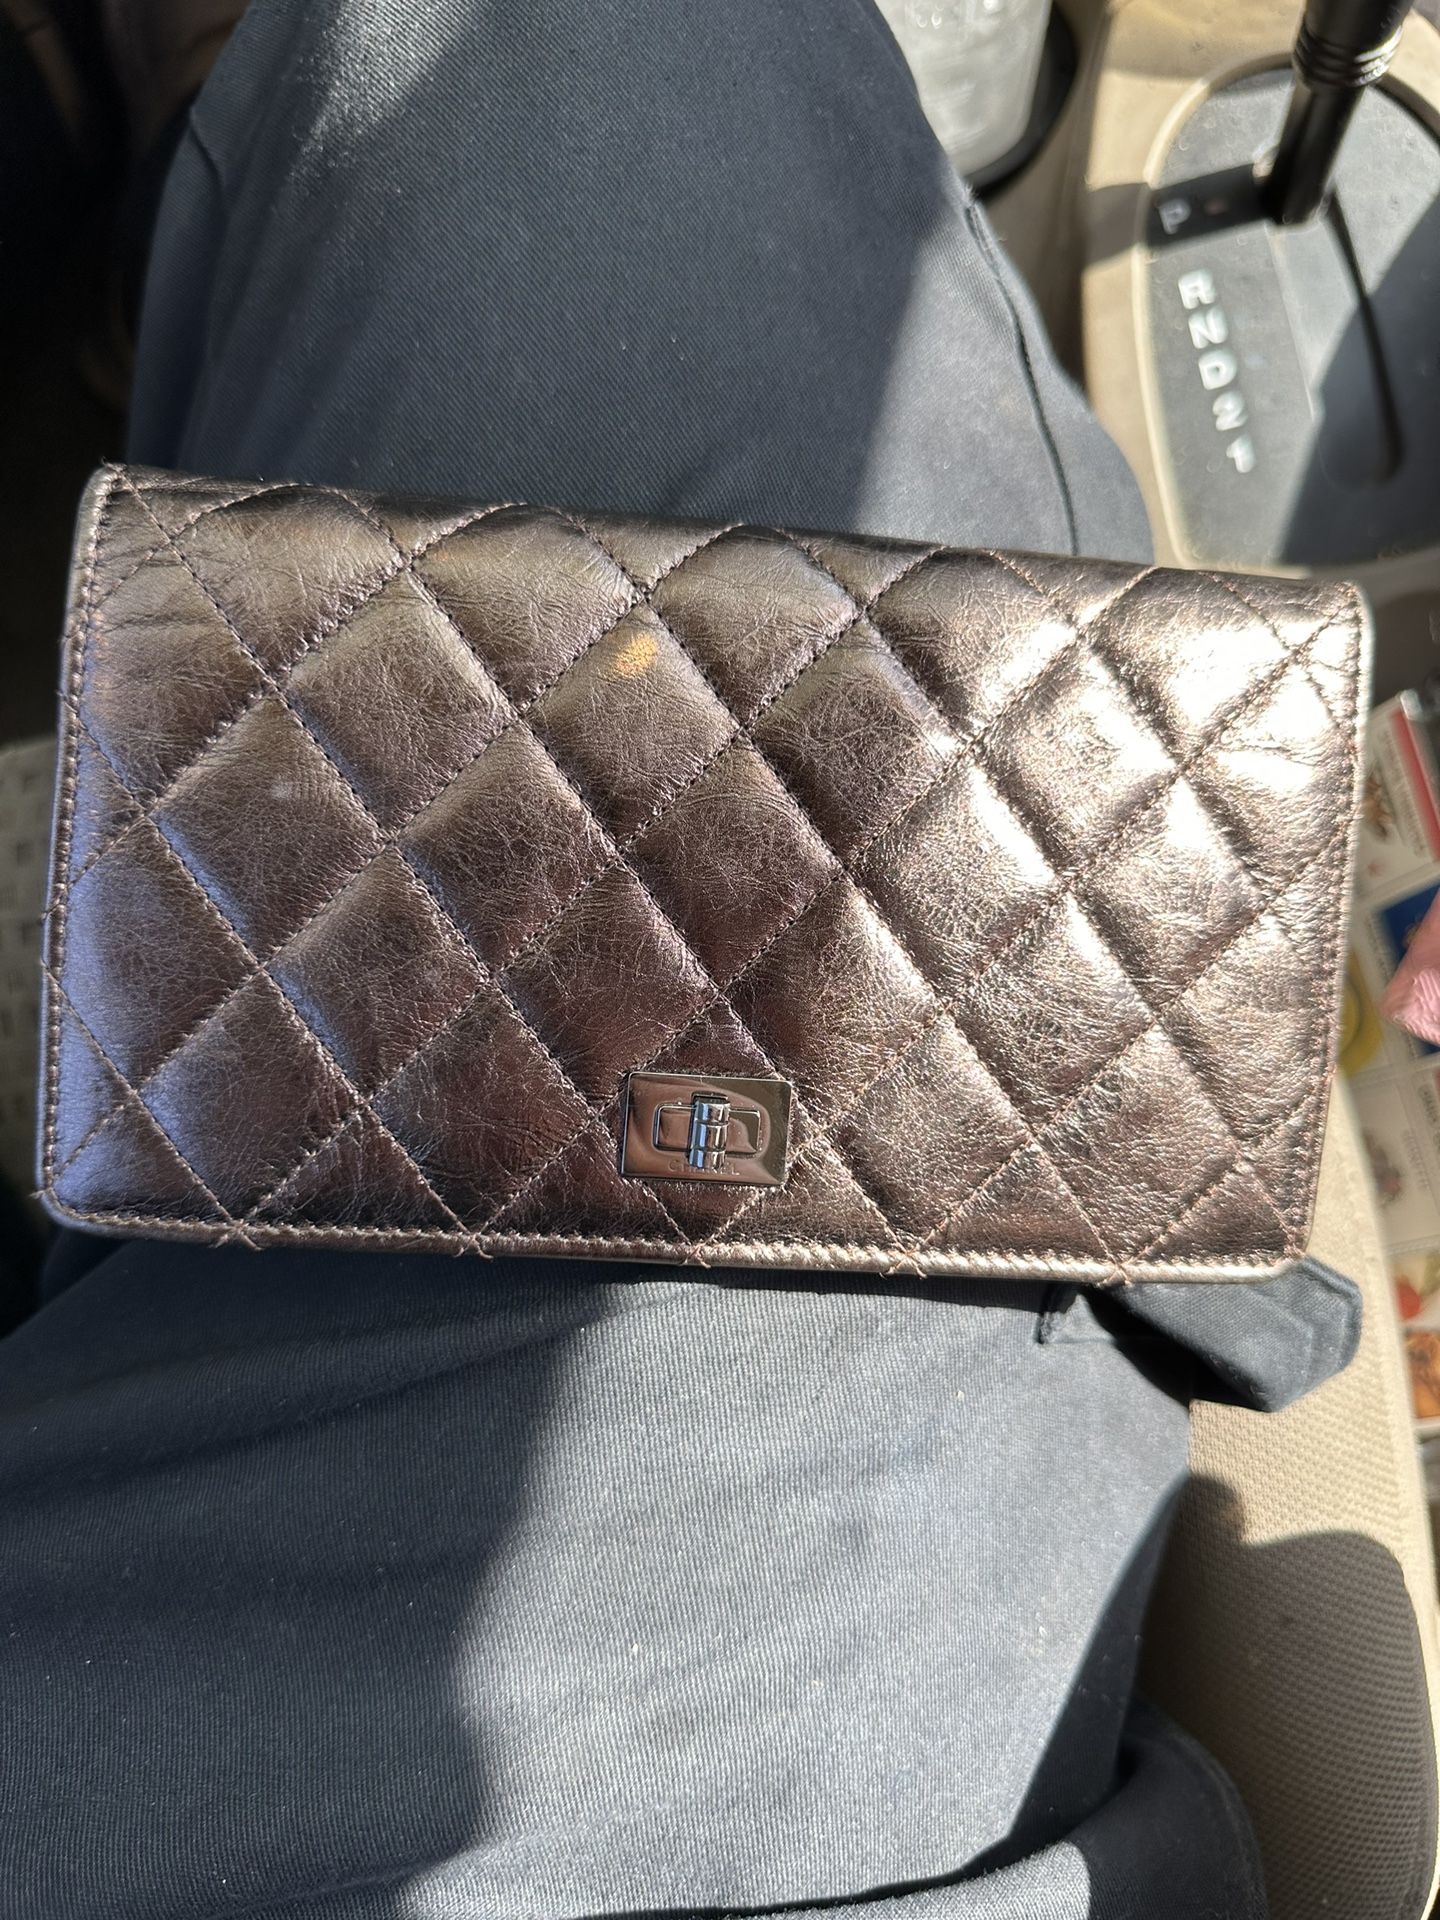 Chanel Women's Wallet for Sale in Mesa, AZ - OfferUp